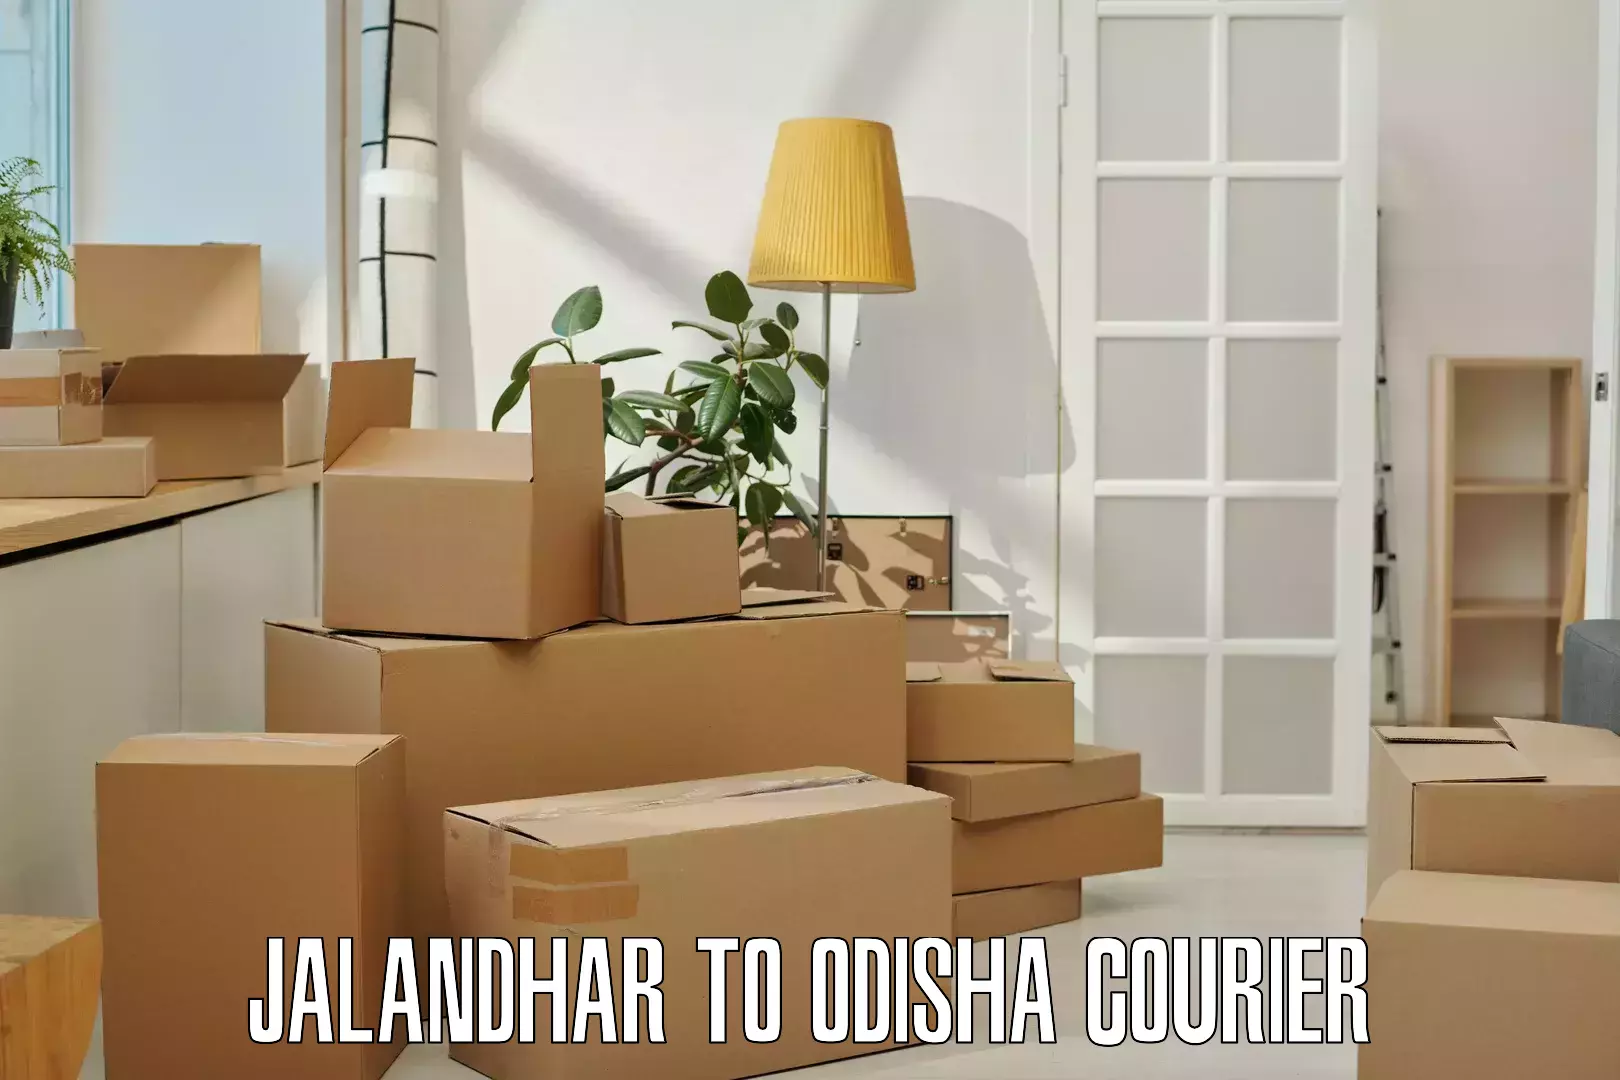 Express logistics providers Jalandhar to Raruan